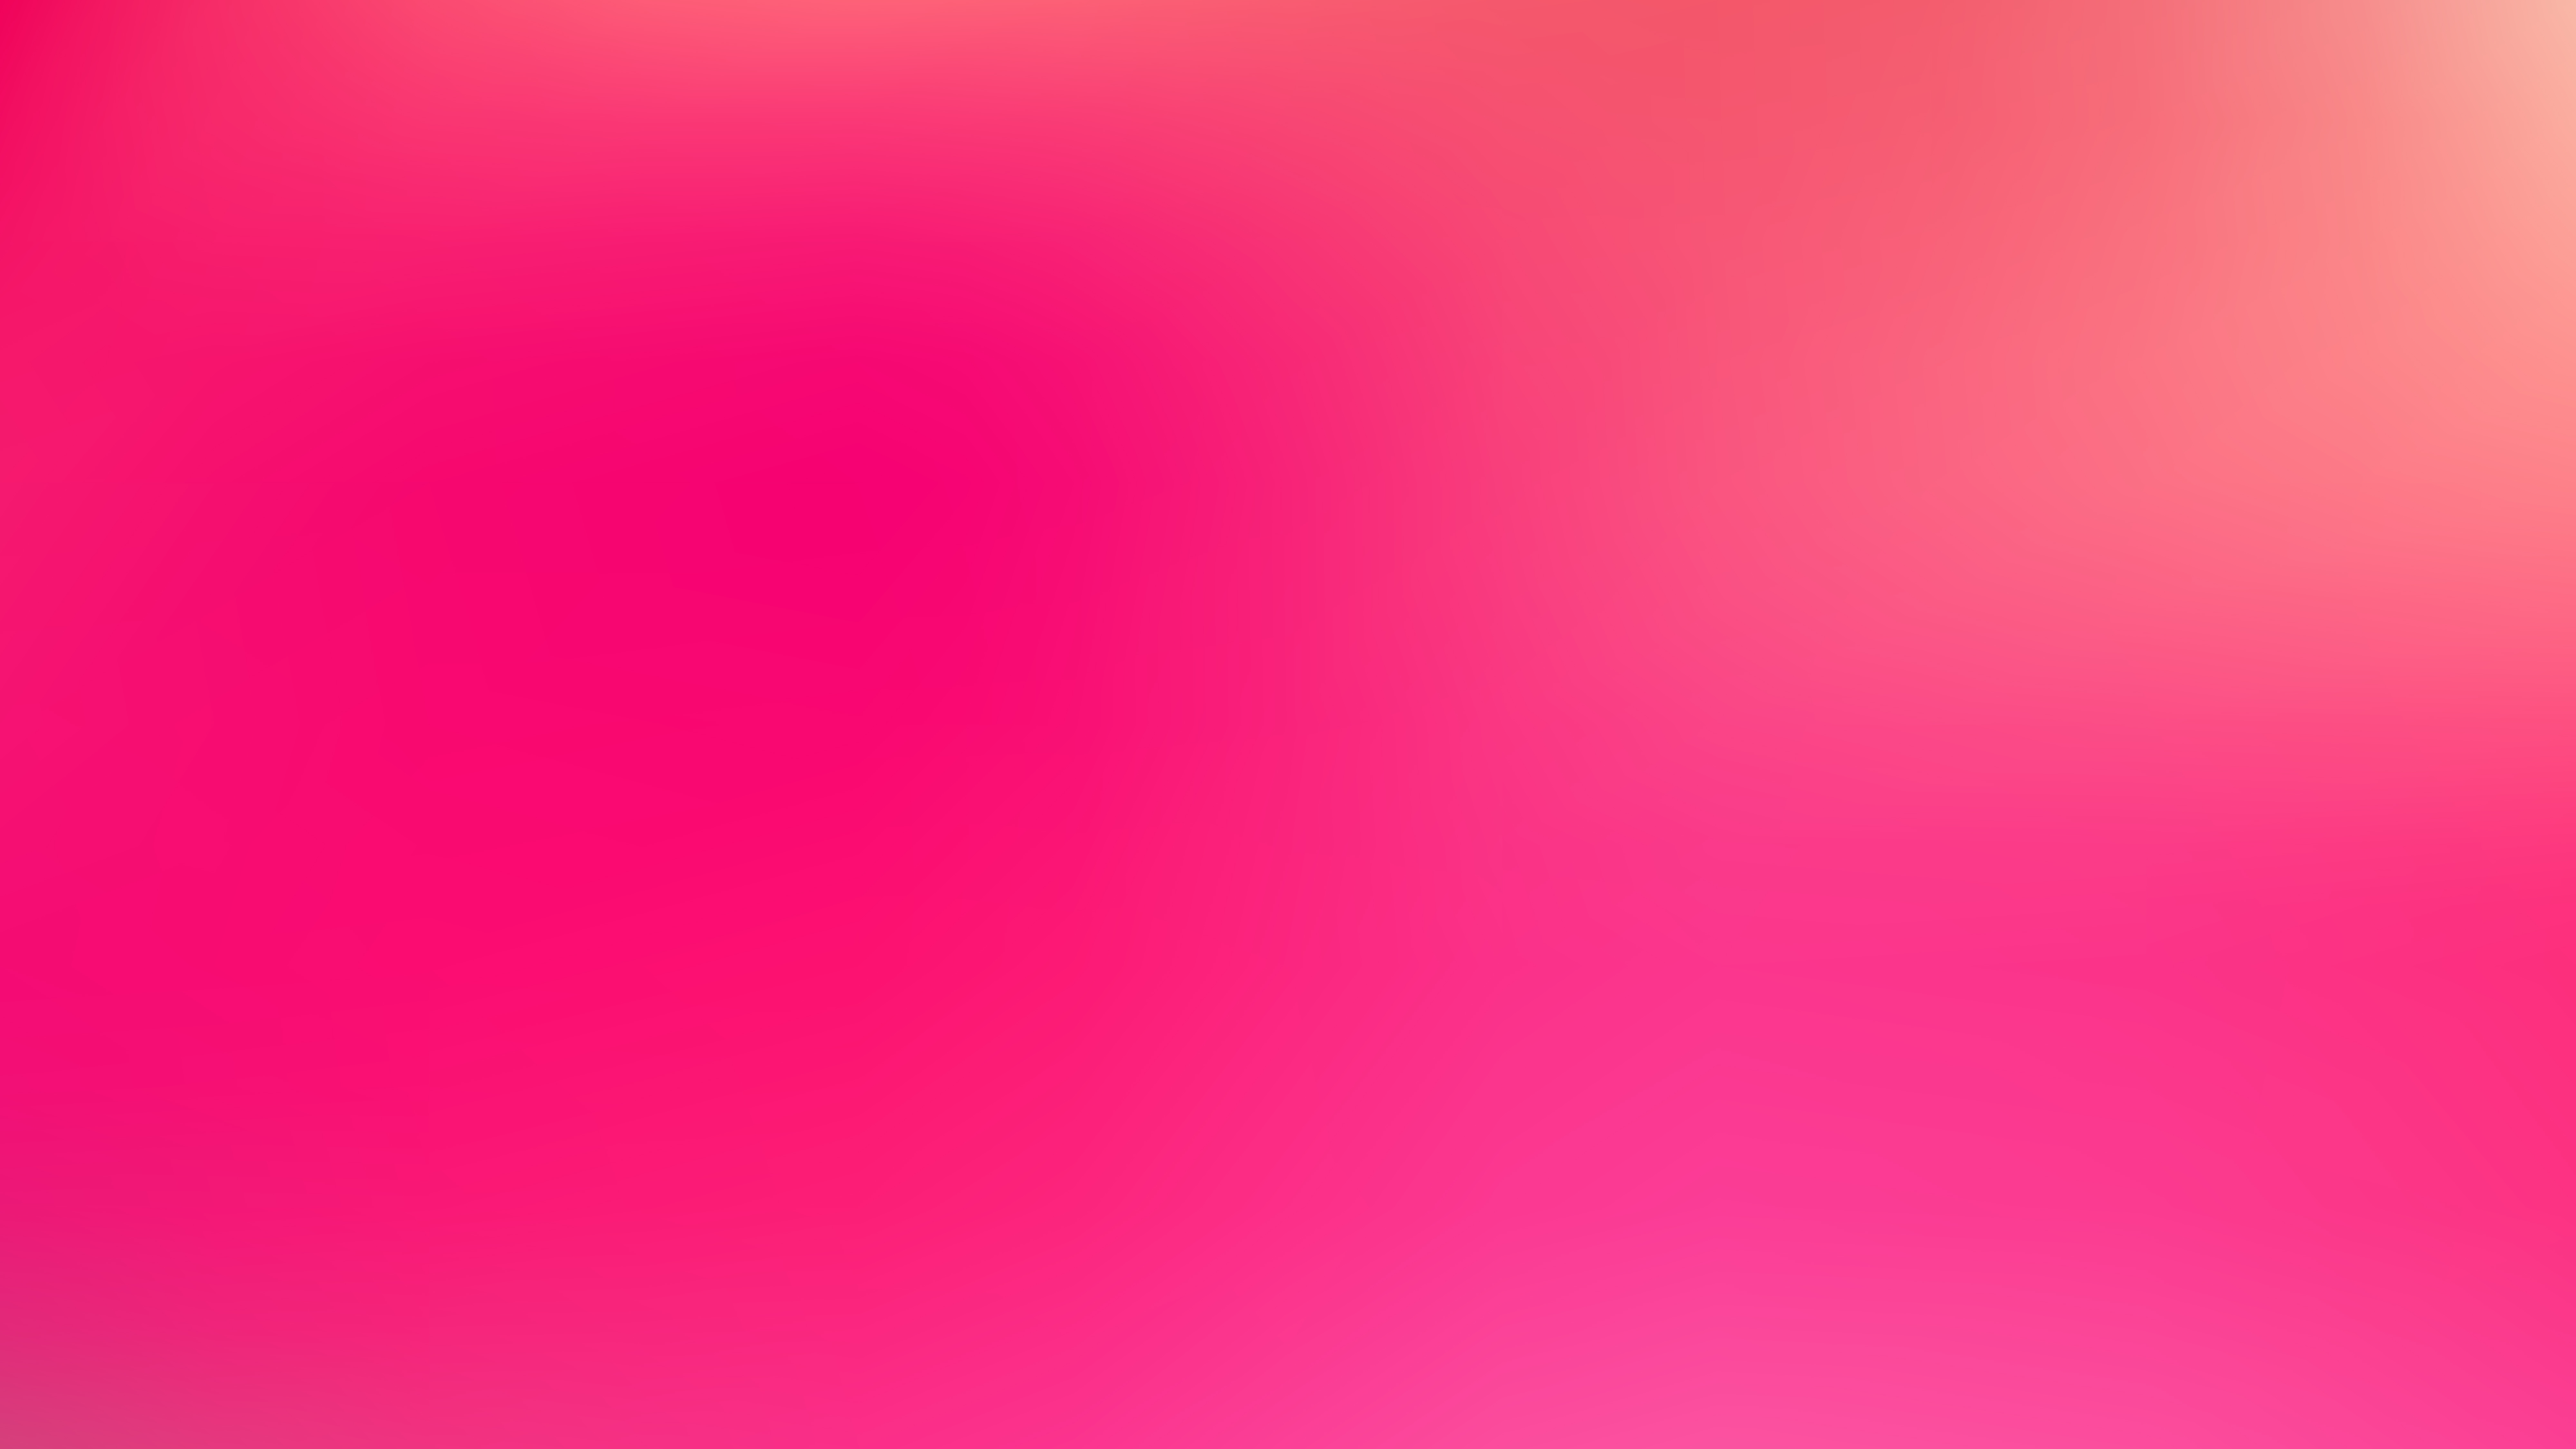 Free Pink Blur Background